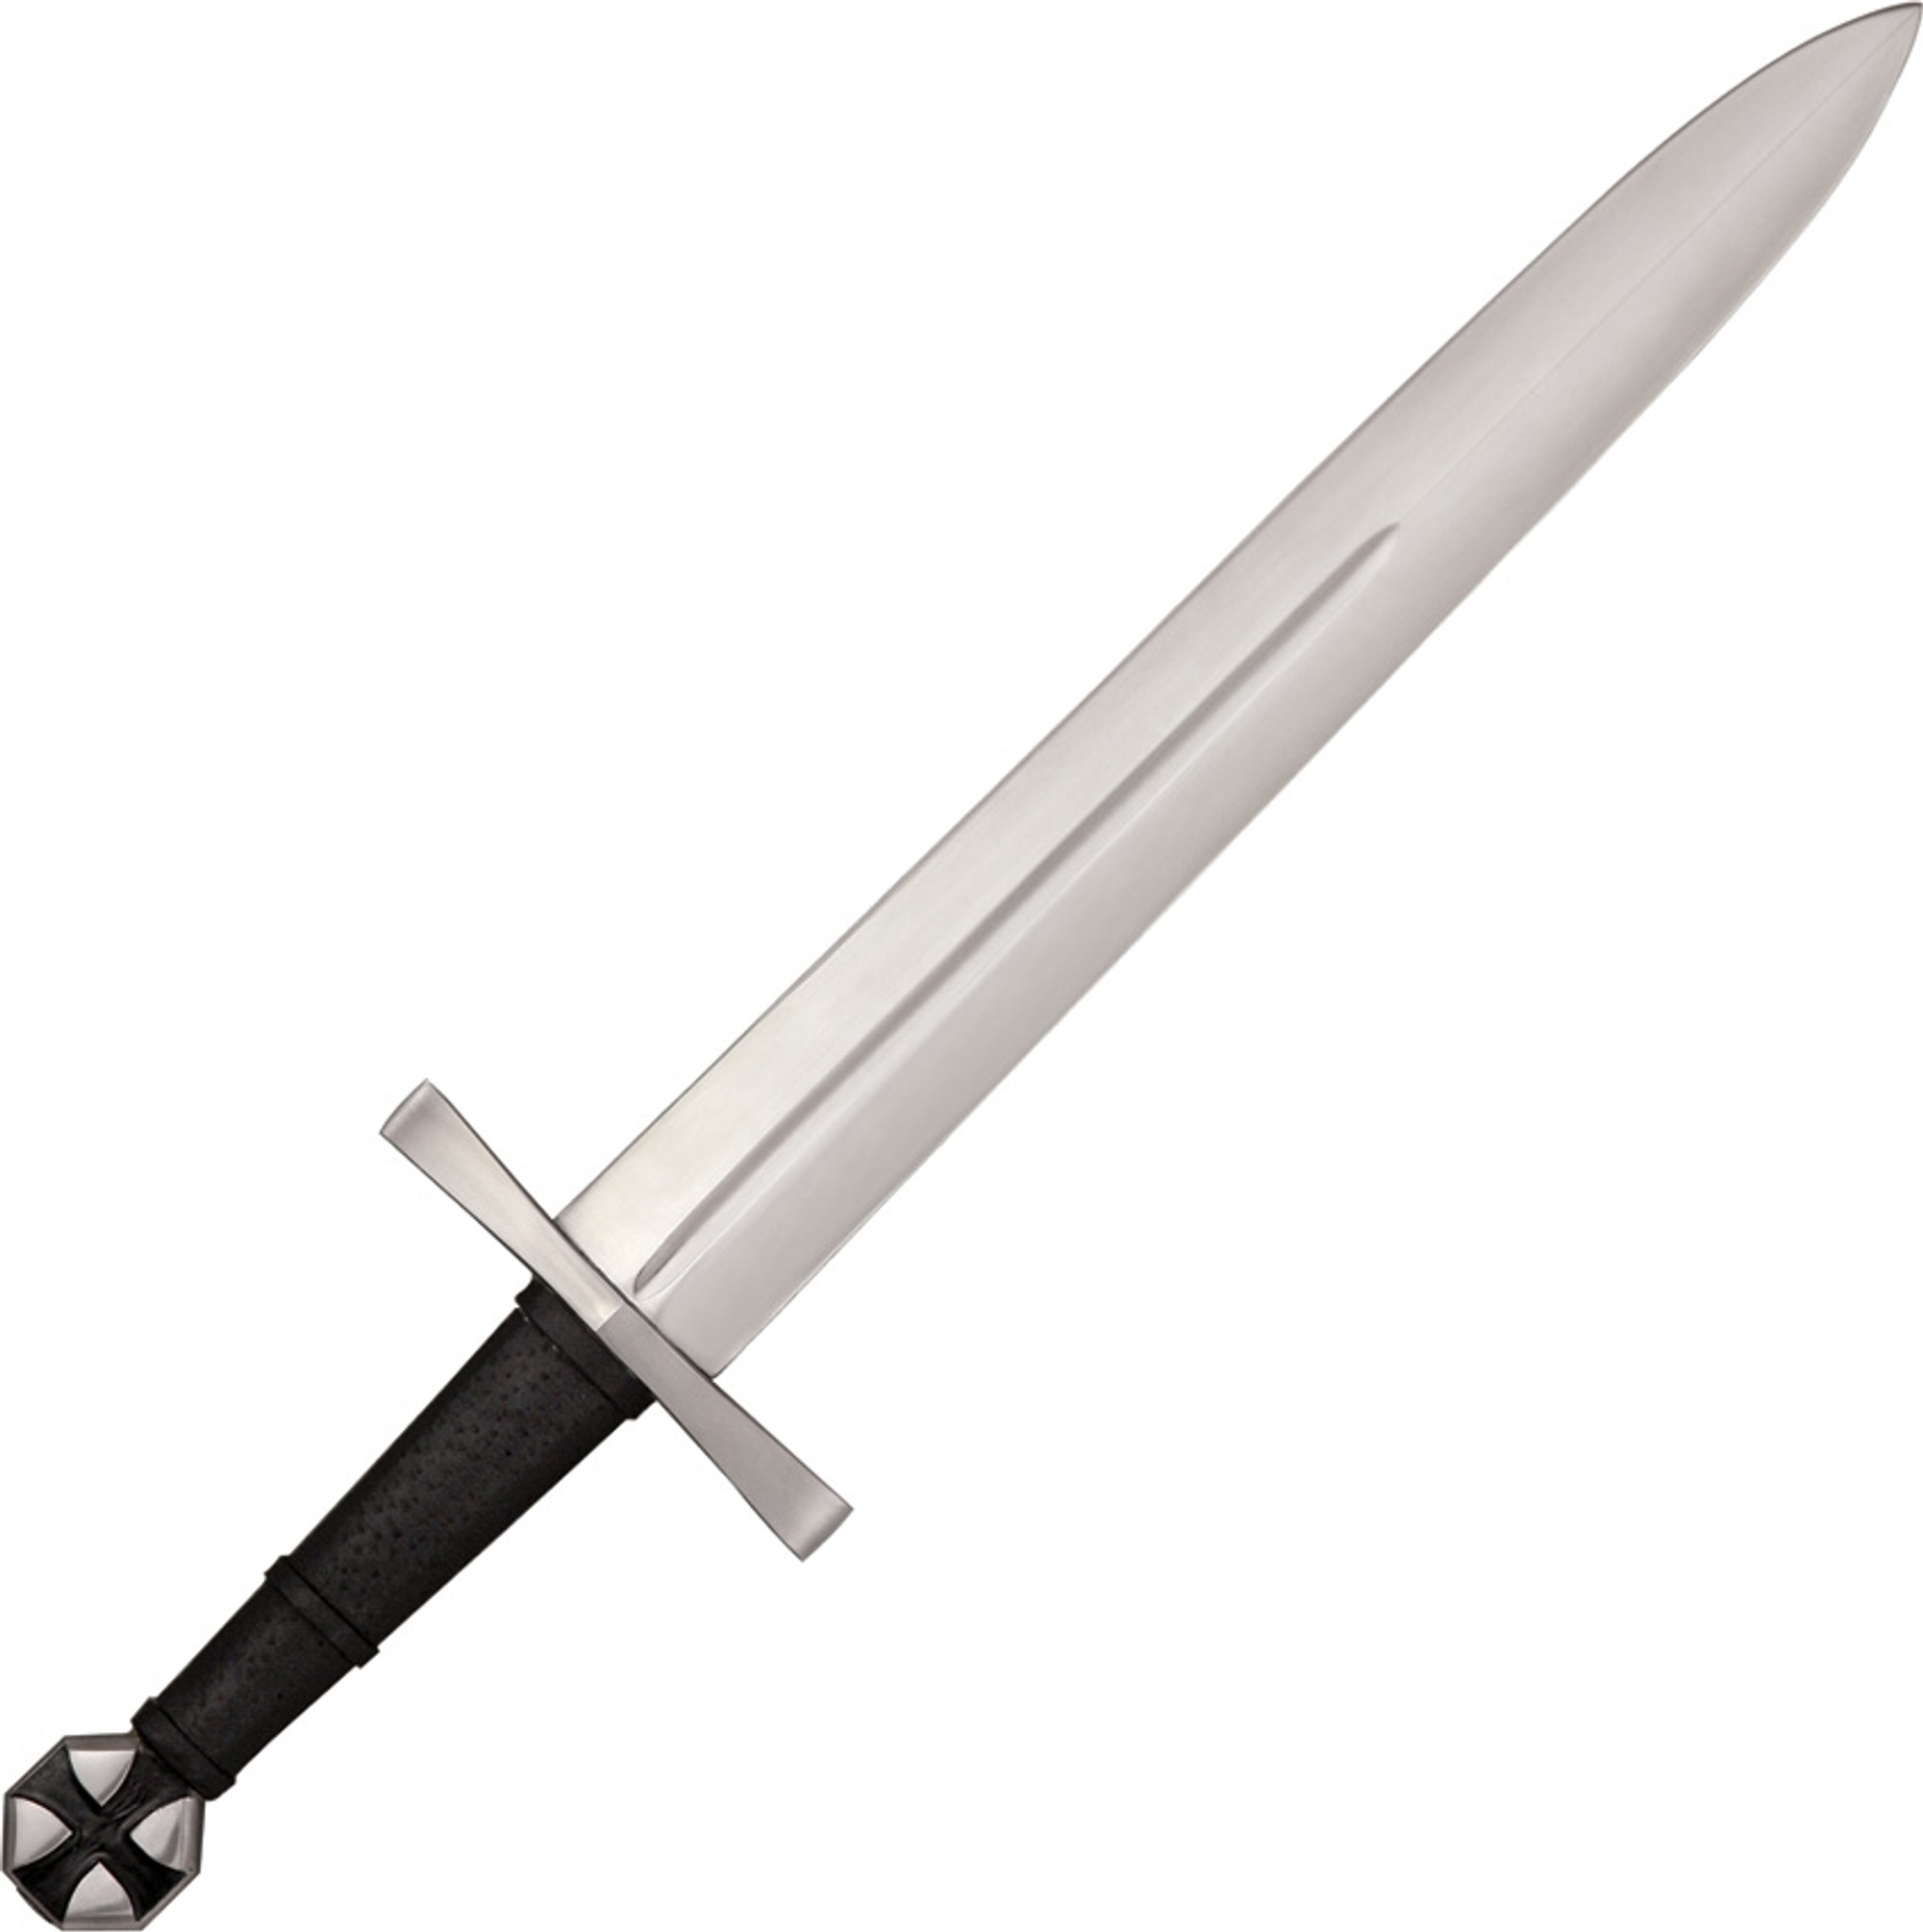 Brookhart Teutonic War Dagger